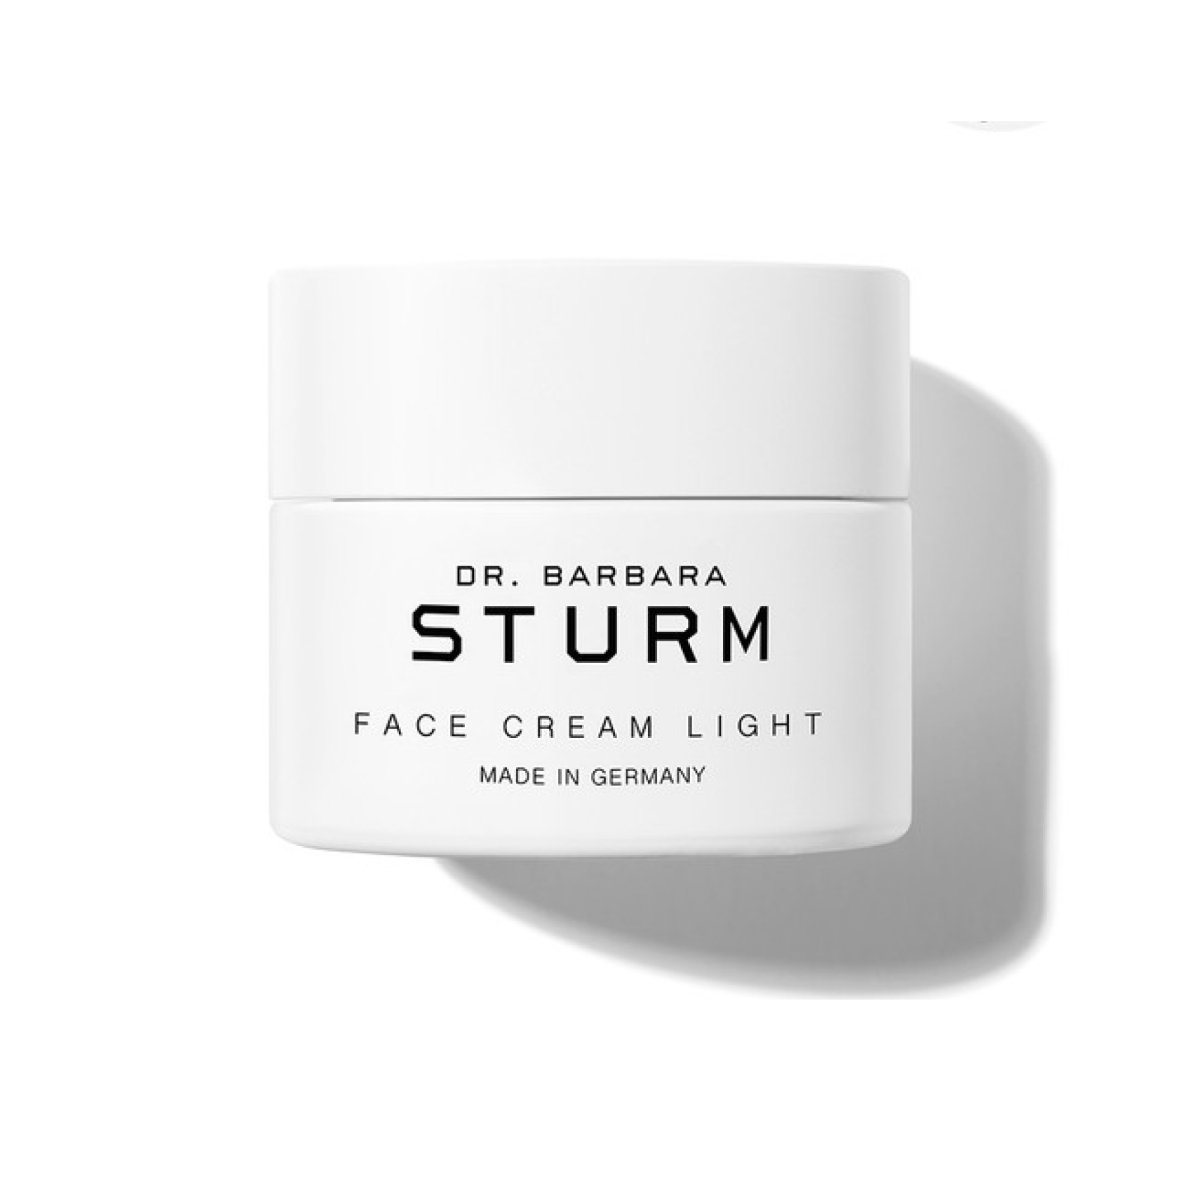 Dr. Barbara Sturm Face Cream Light - SkincareEssentials